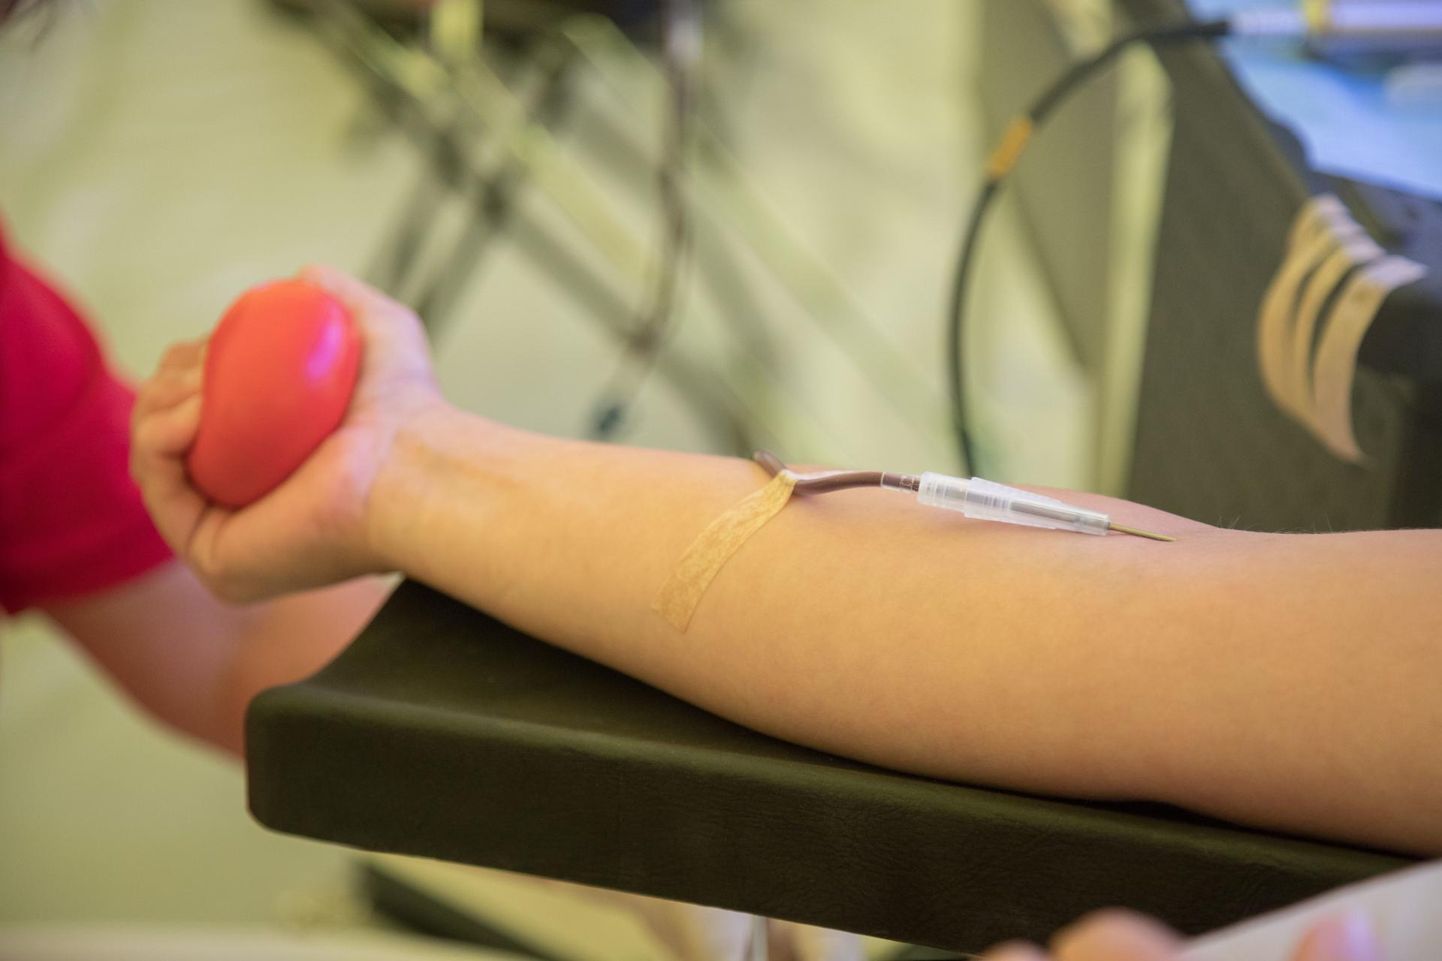 Koroonaviiruse levimise tõttu on Pärnu haigla veretalituse verevarud rahuldavad ja talitus loodab, et eriolukorra tingimusteski jätkavad terved veredoonorid vereloovutust, sest haiglates on palju patsiente, kes vajavad doonoriverd.